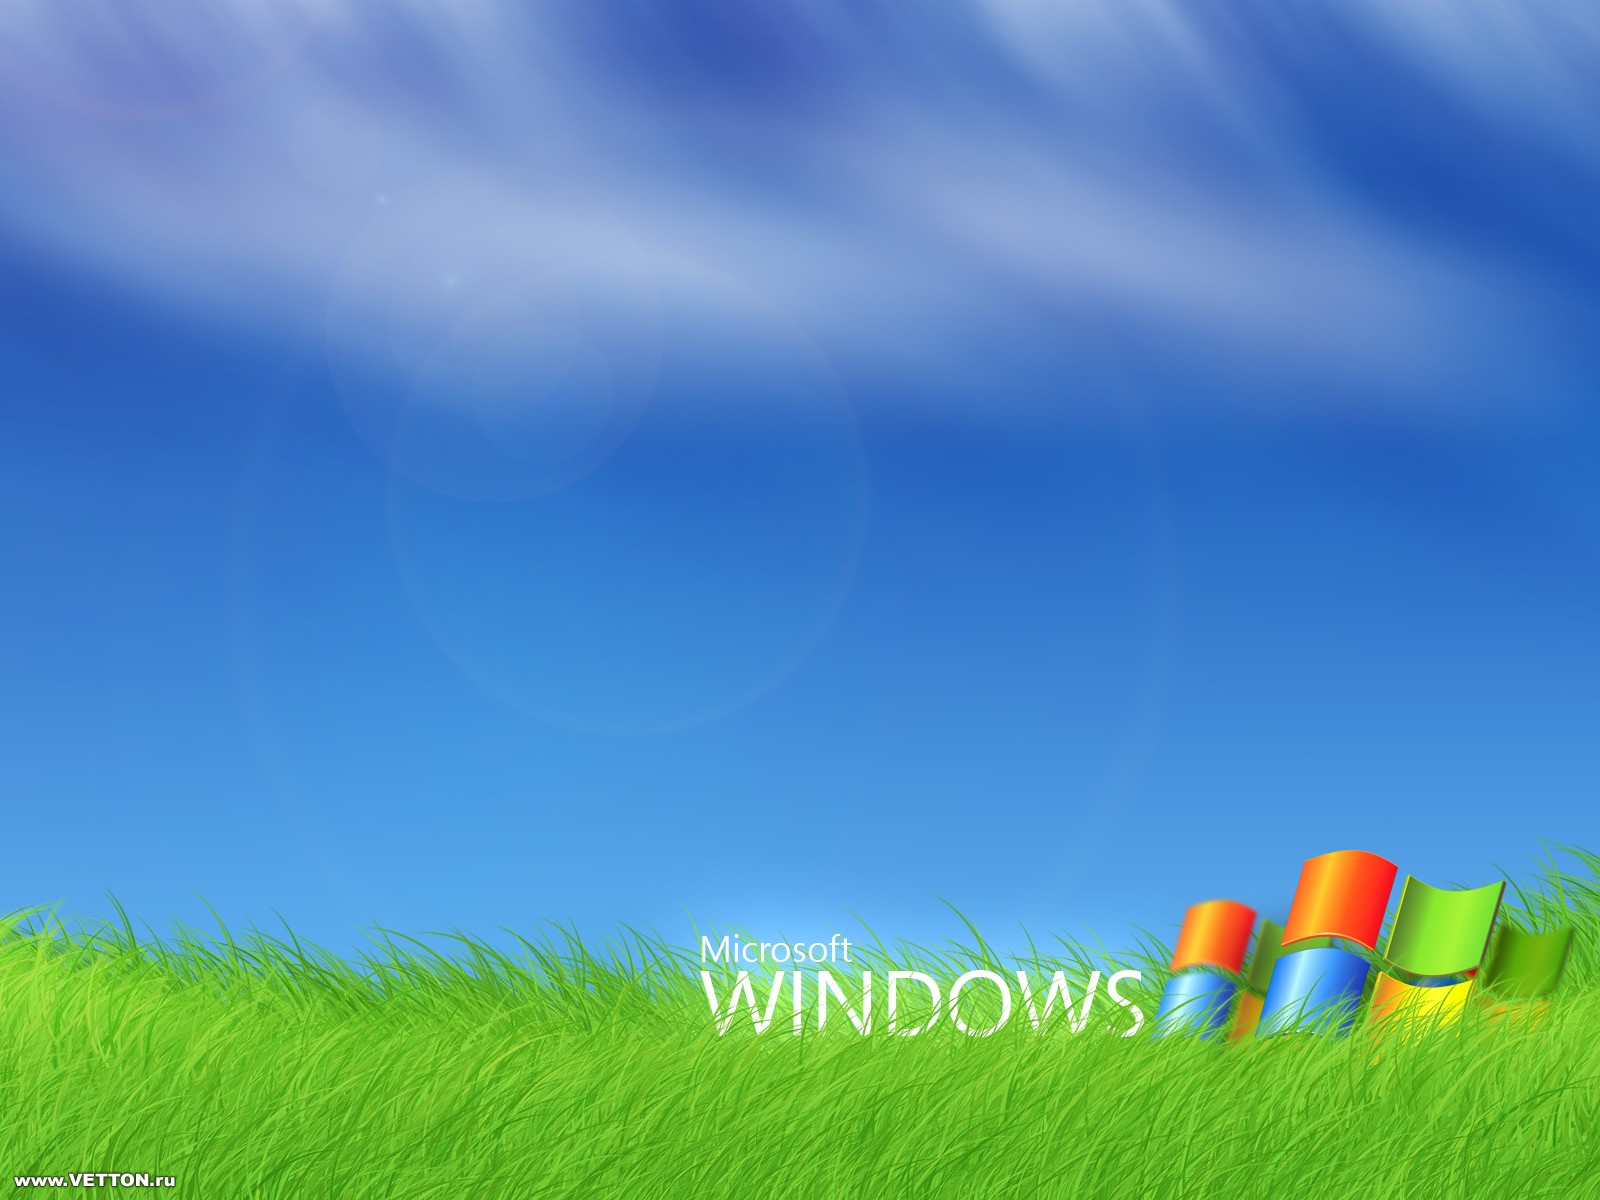 http://4.bp.blogspot.com/_RAlP3BmEW1Q/TQYTxPoGYeI/AAAAAAAACho/OnDIcbZ7HPA/s1600/The-best-top-desktop-windows-xp-wallpapers-65.jpg